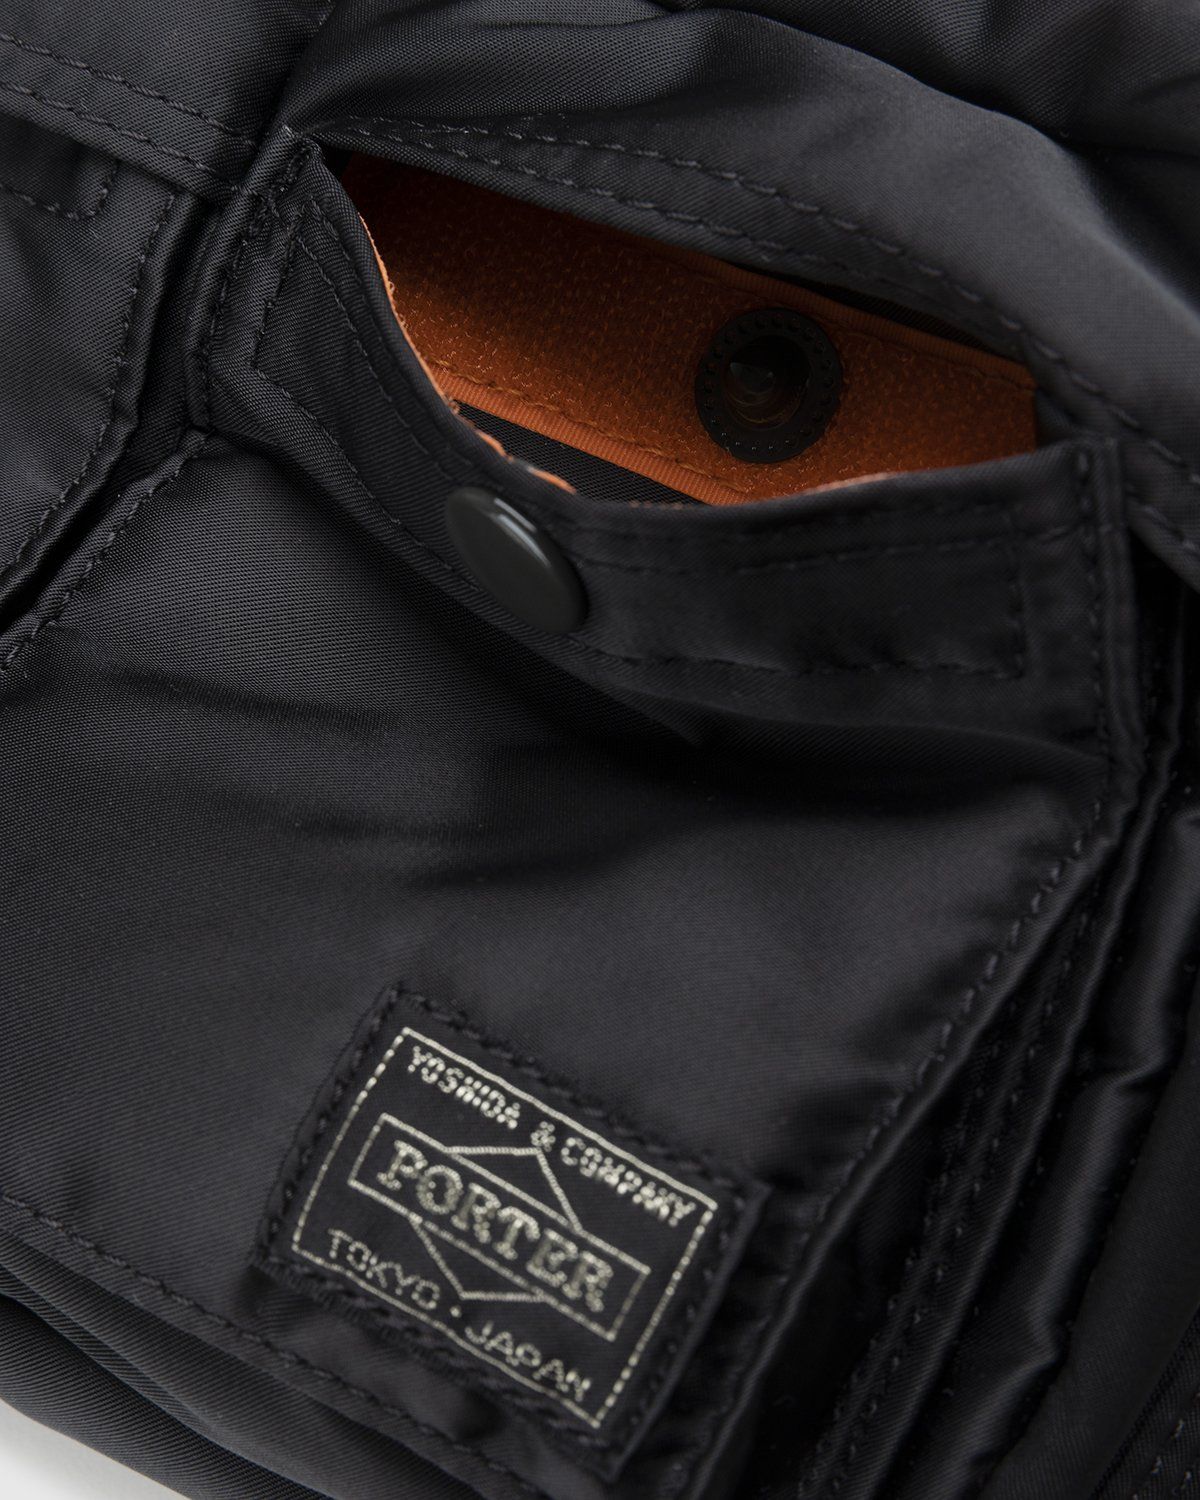 Porter-Yoshida & Co. – Tanker Shoulder Bag Black - Bags - Black - Image 3